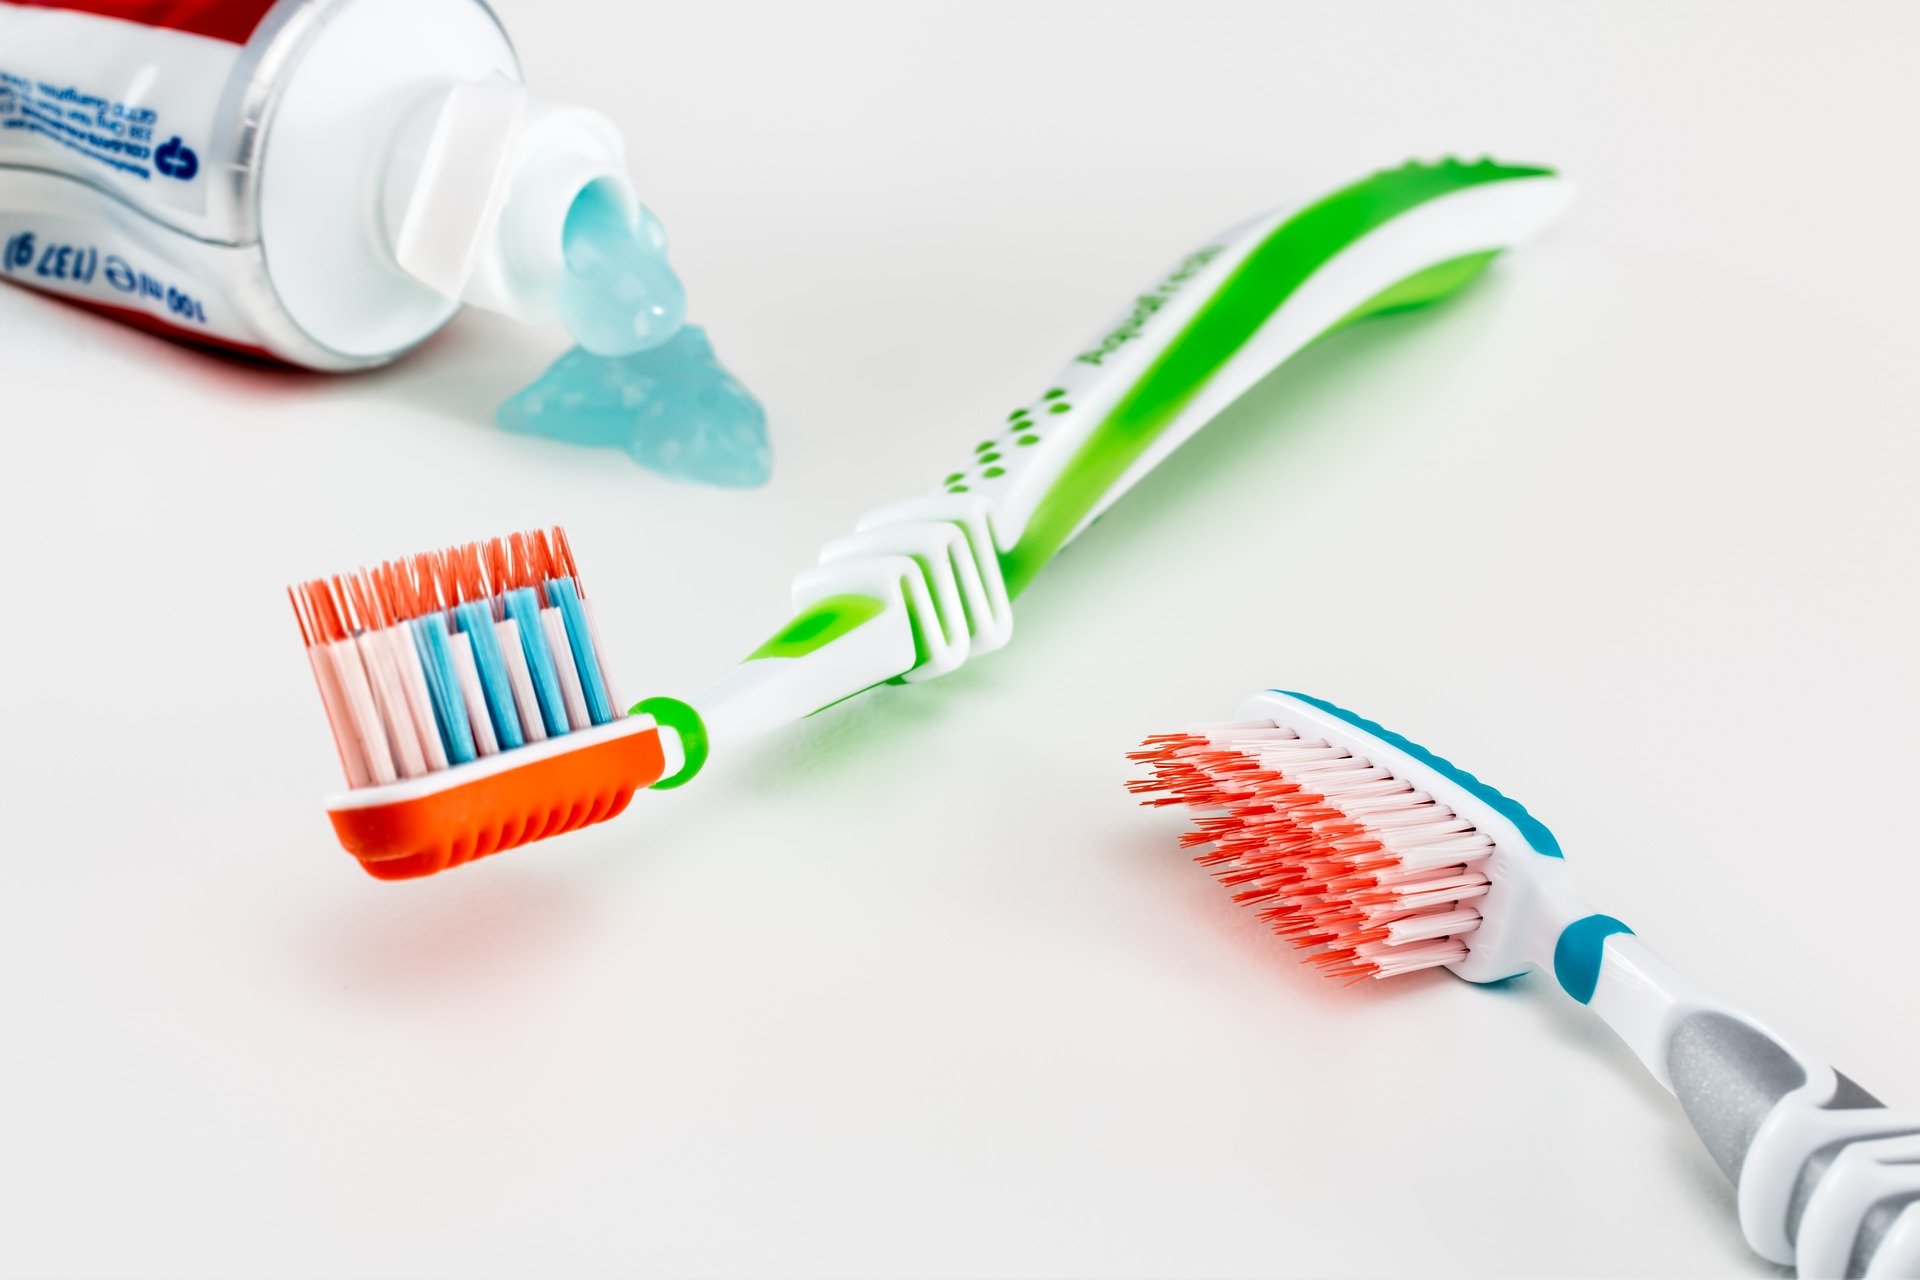 Cepillarse bien los dientes varias veces al día y usar hilo dental es clave (Foto: Pixabay)